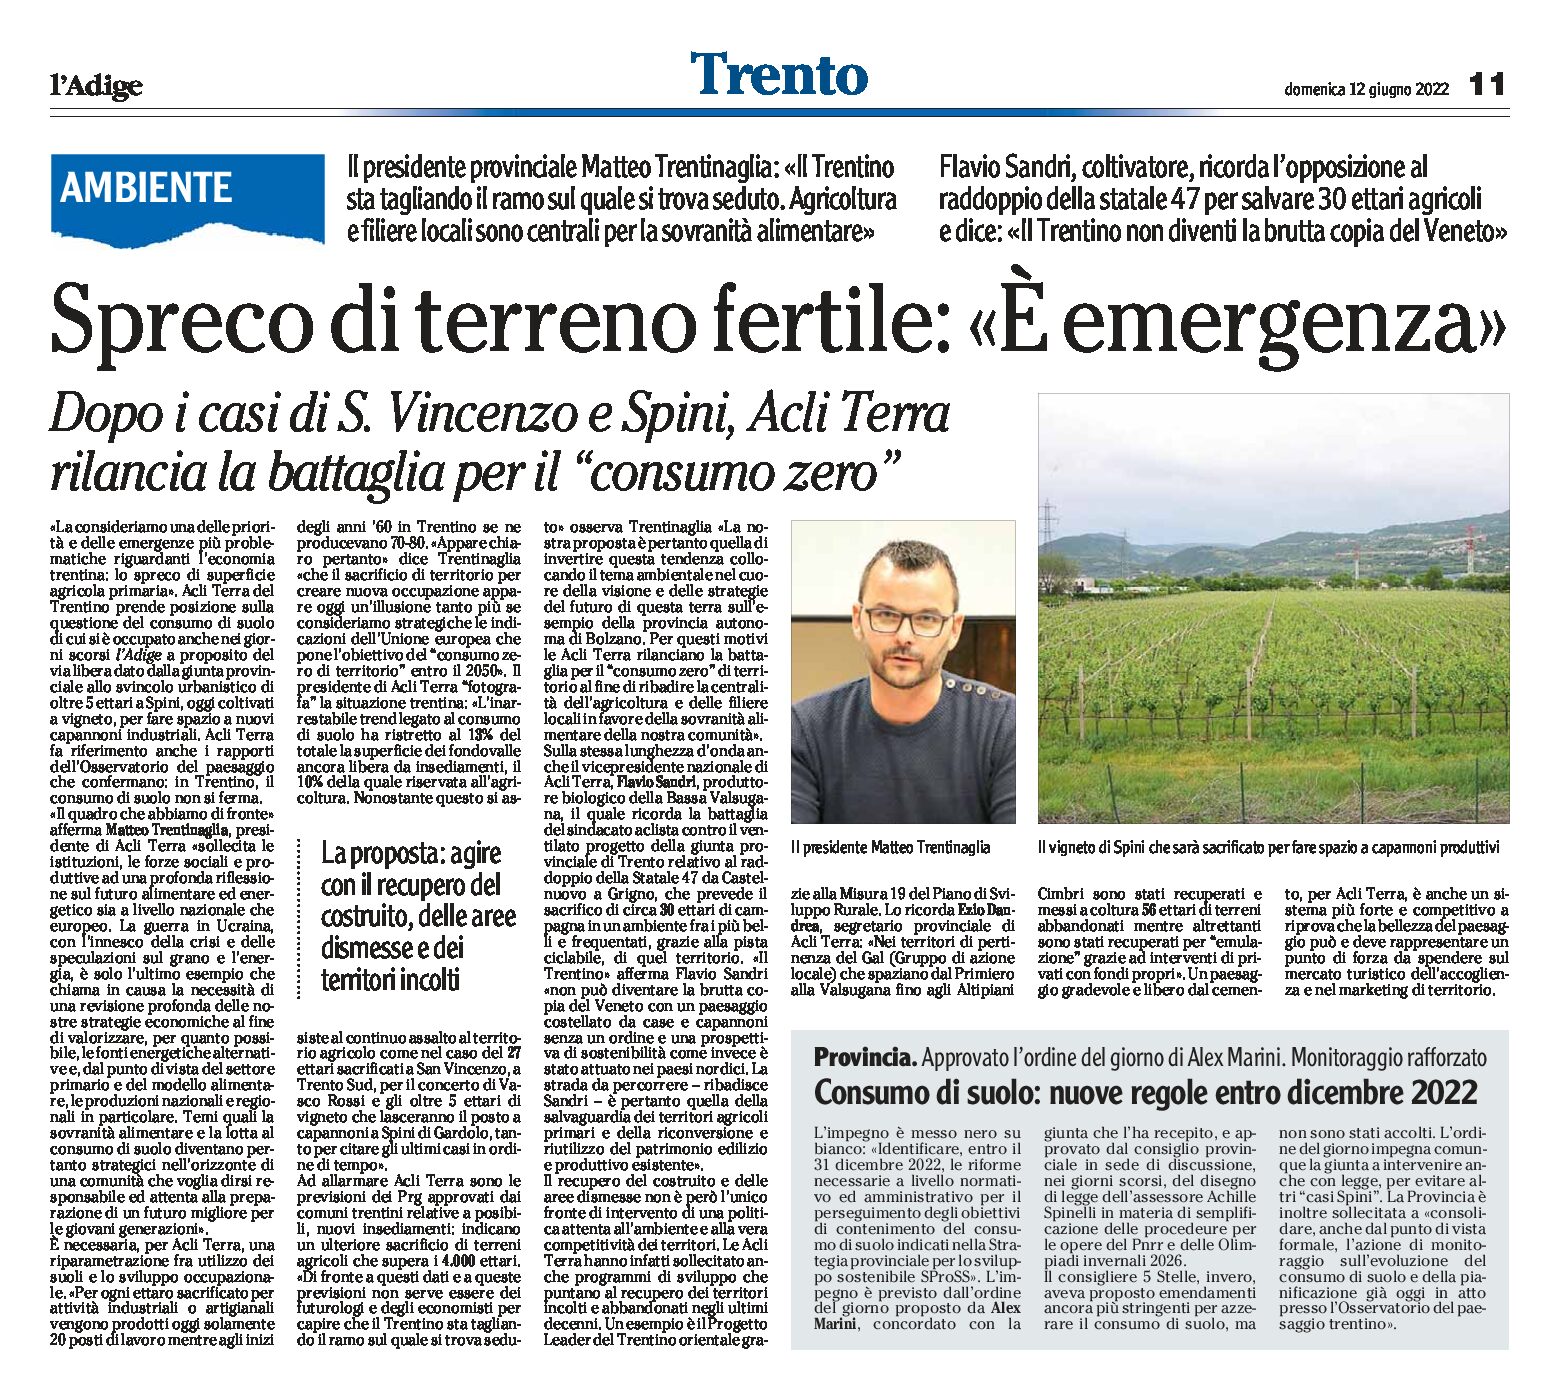 Ambiente, Trentino: spreco di terreno fertile, Acli Terra “è emergenza”